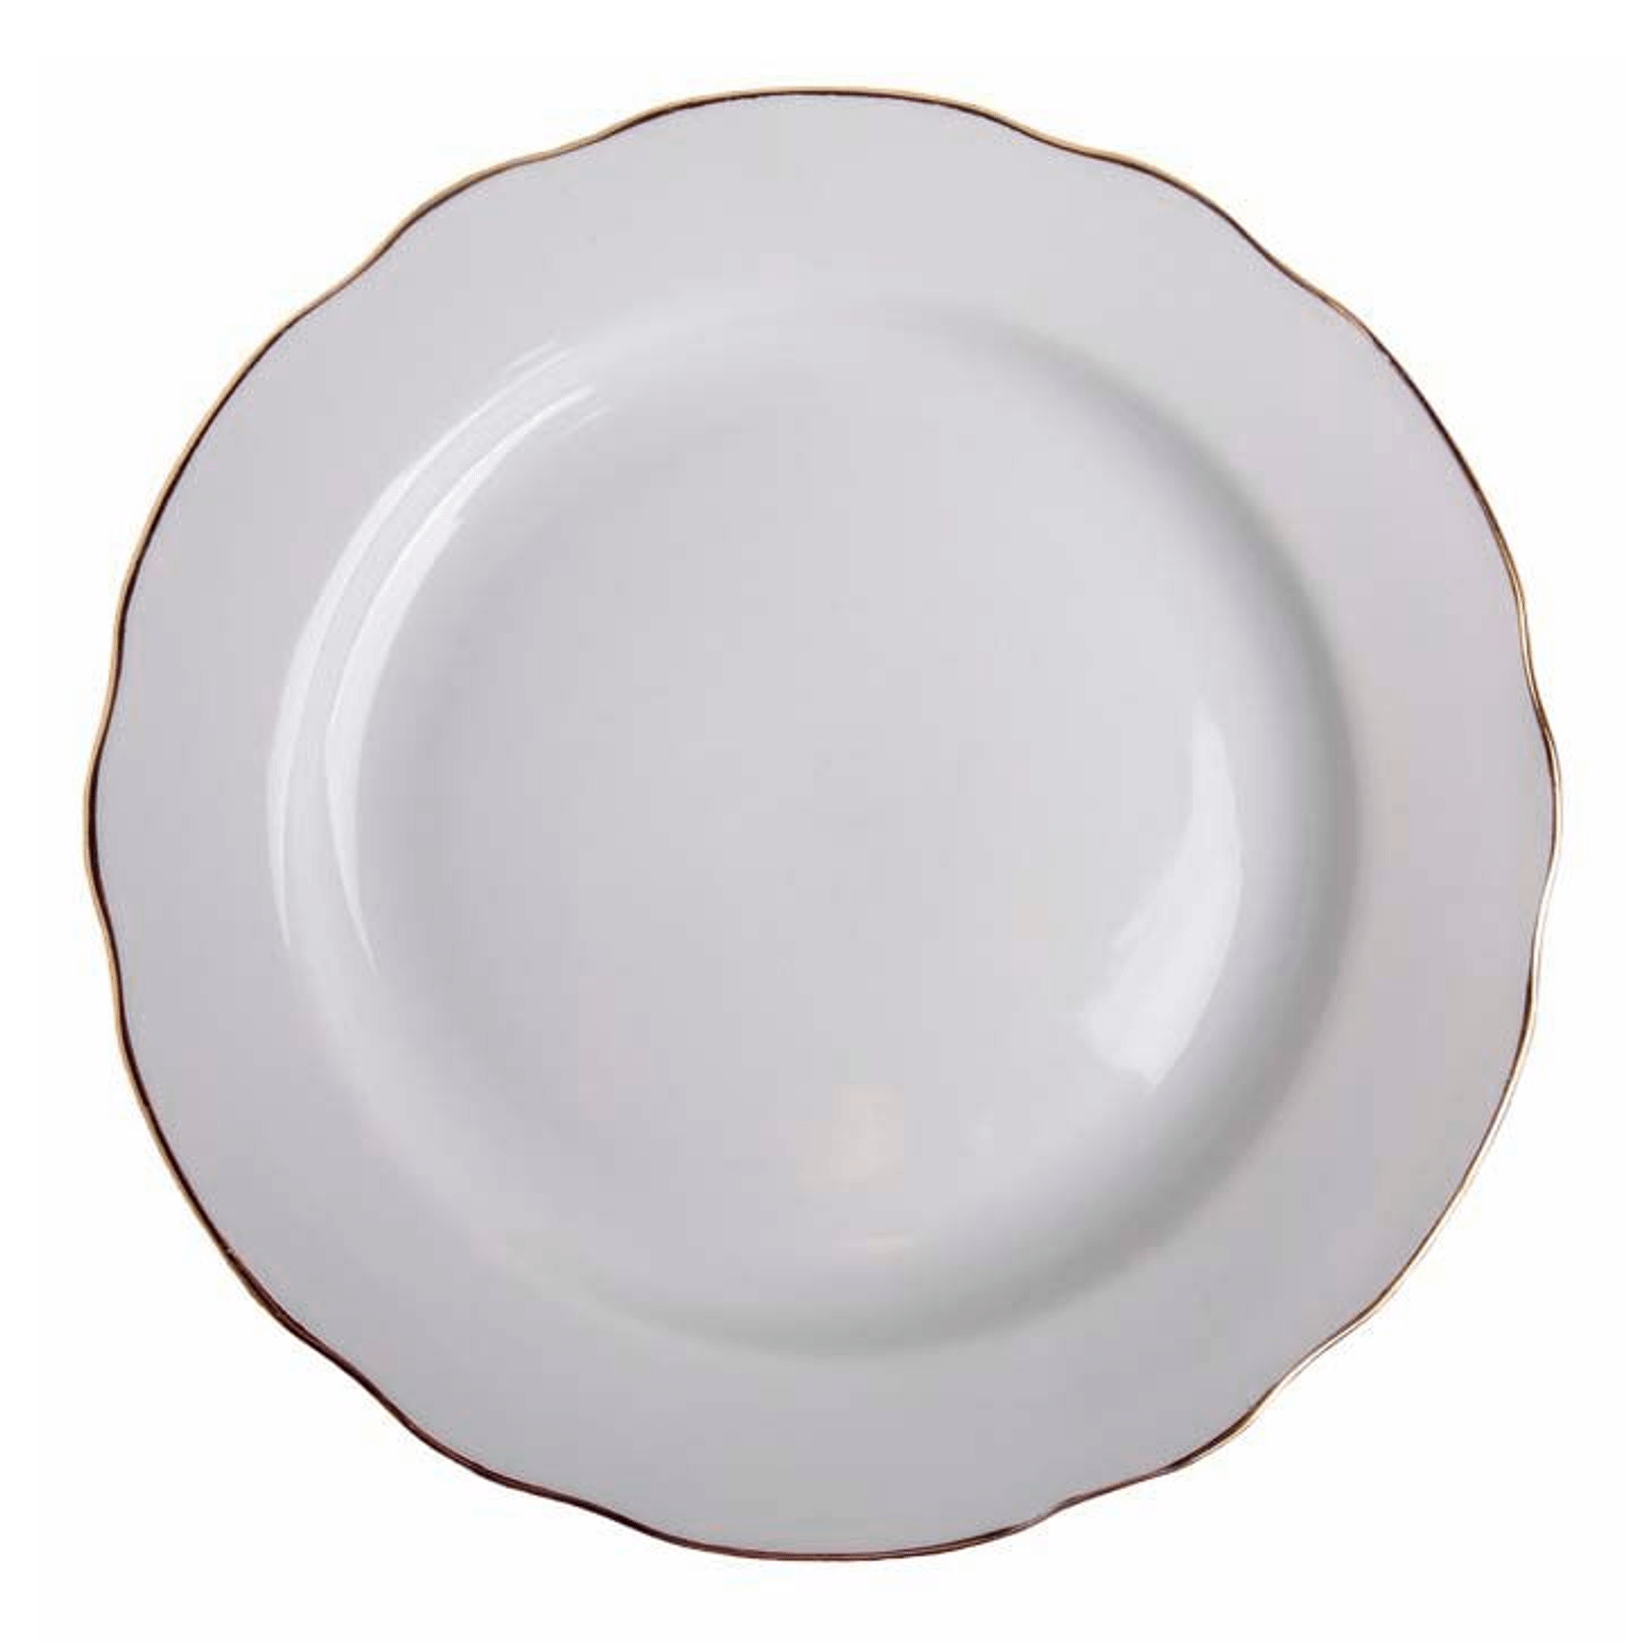 Тарелка для вторых блюд Дулевский фарфор с вырезным краем 24 см белая